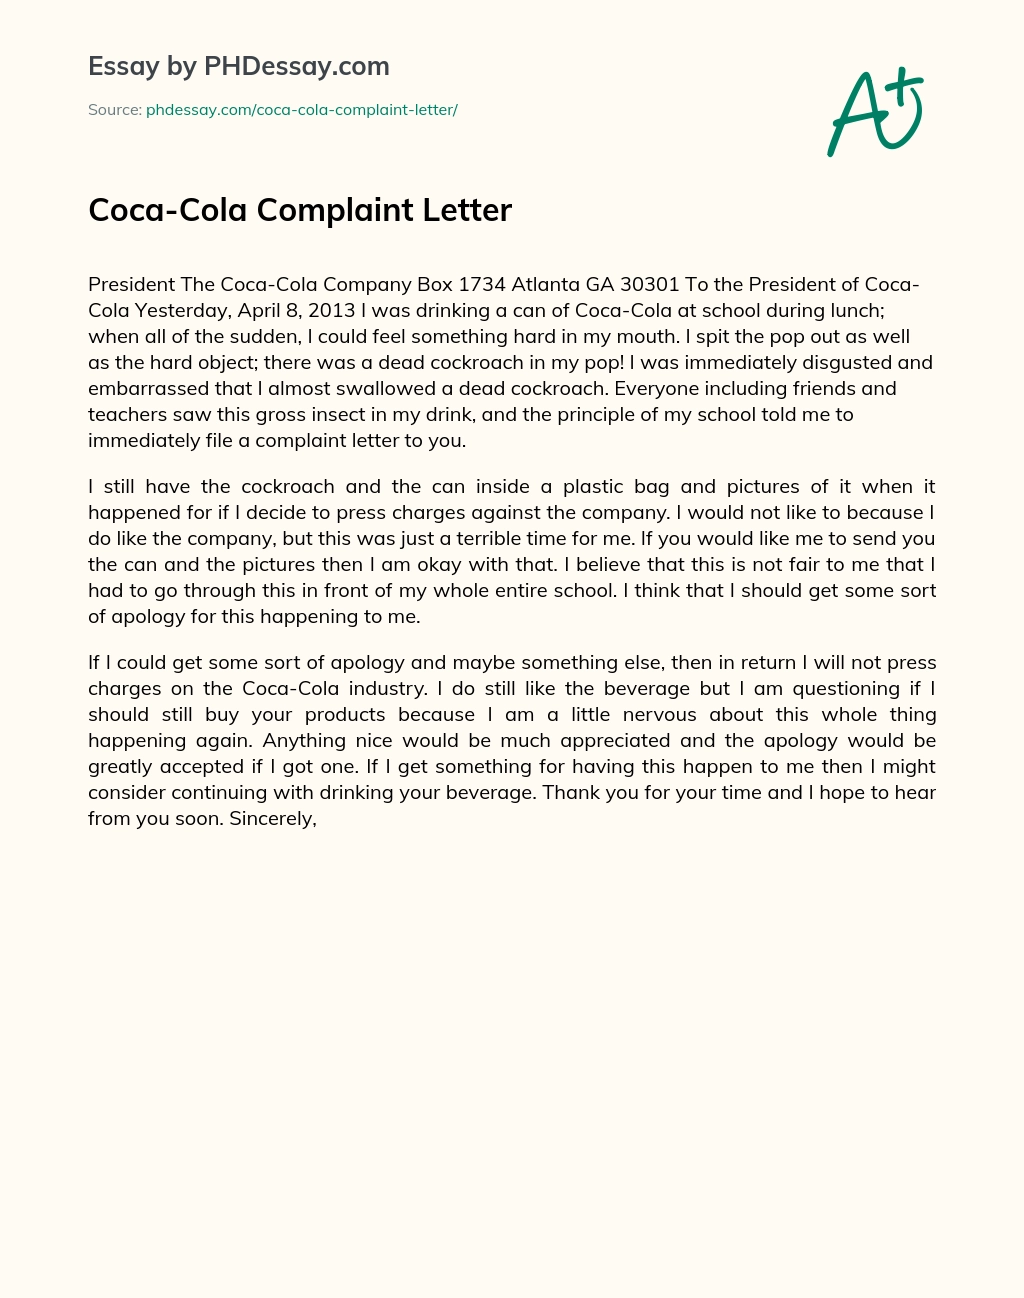 Coca-Cola Complaint Letter essay